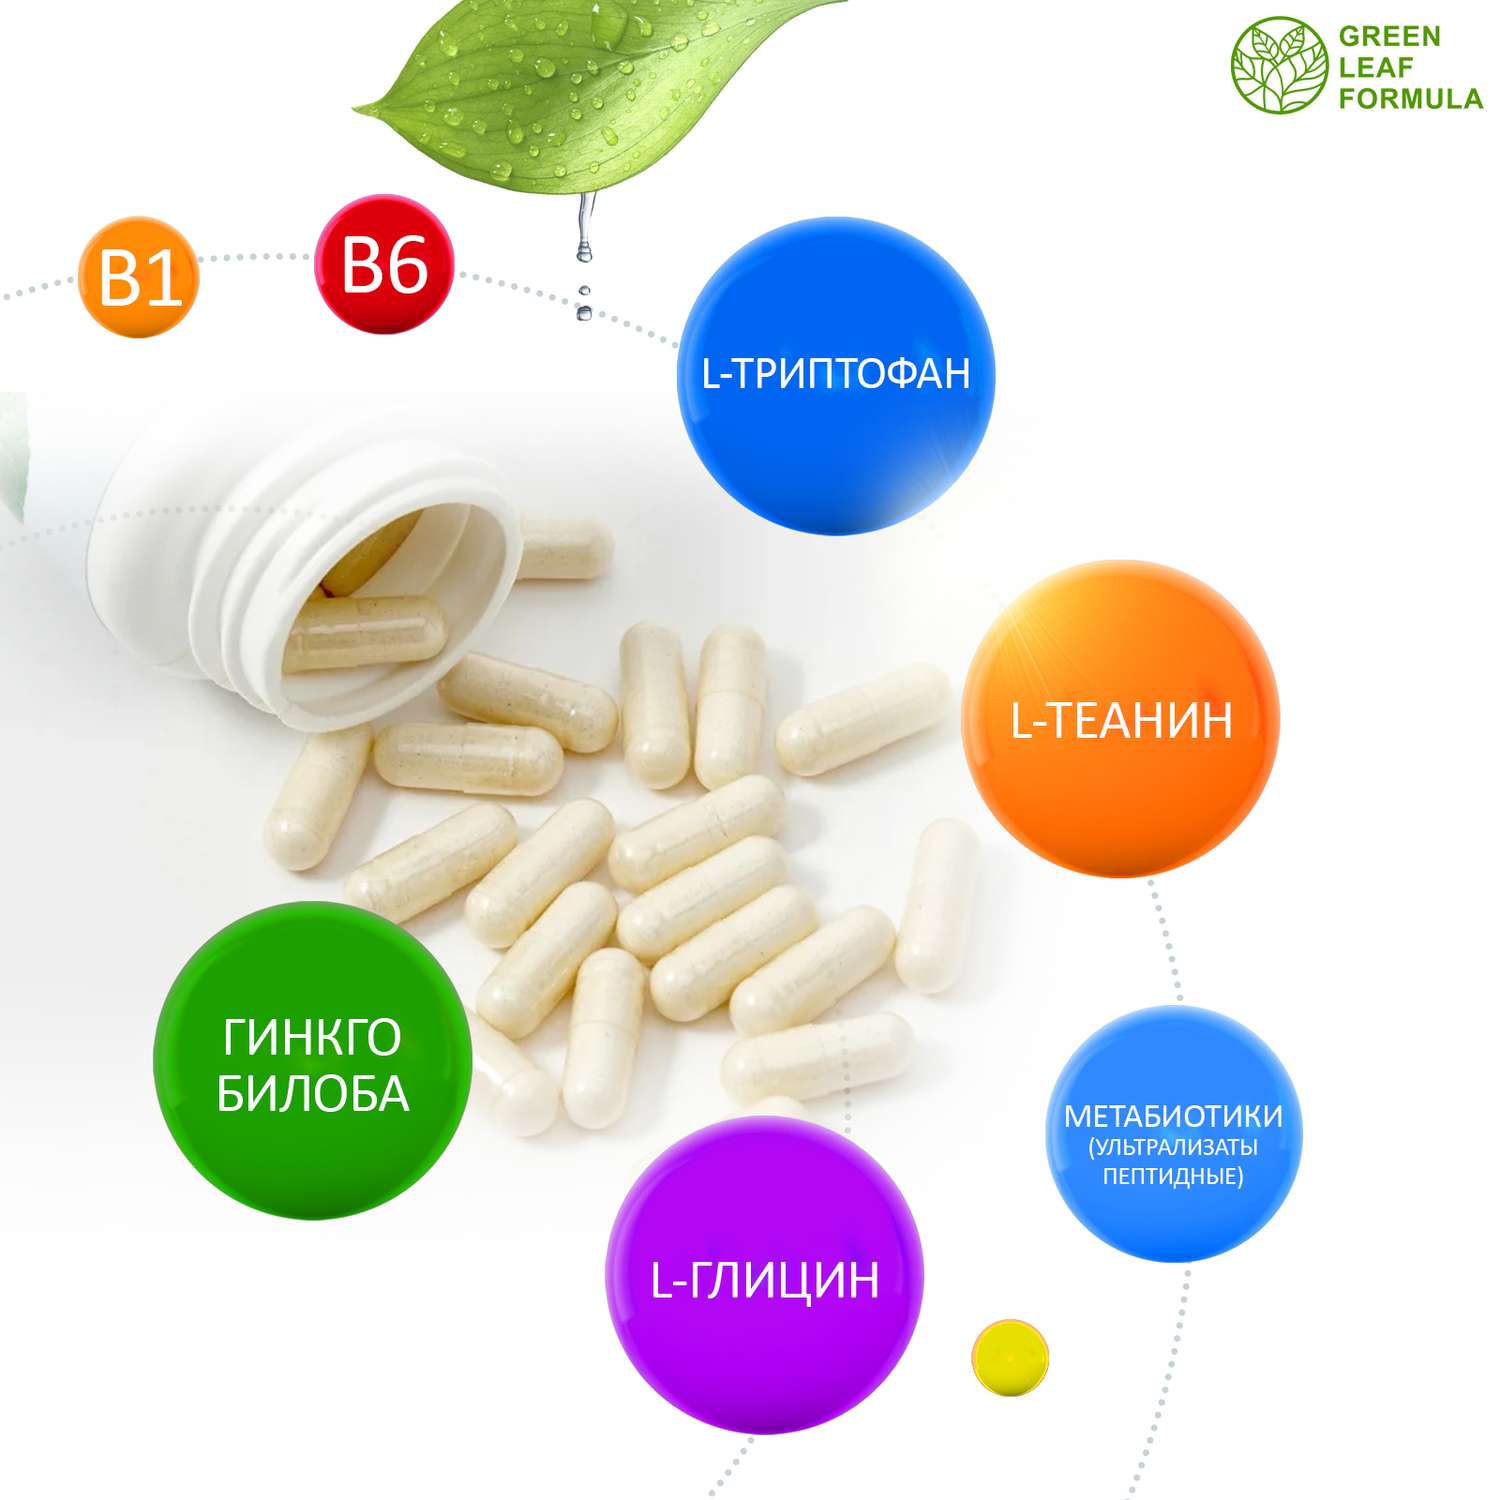 Витамины для нервной системы Green Leaf Formula триптофан 5 HTP 100 мг от стресса и депрессии для мозга для настроения 2 банки - фото 4